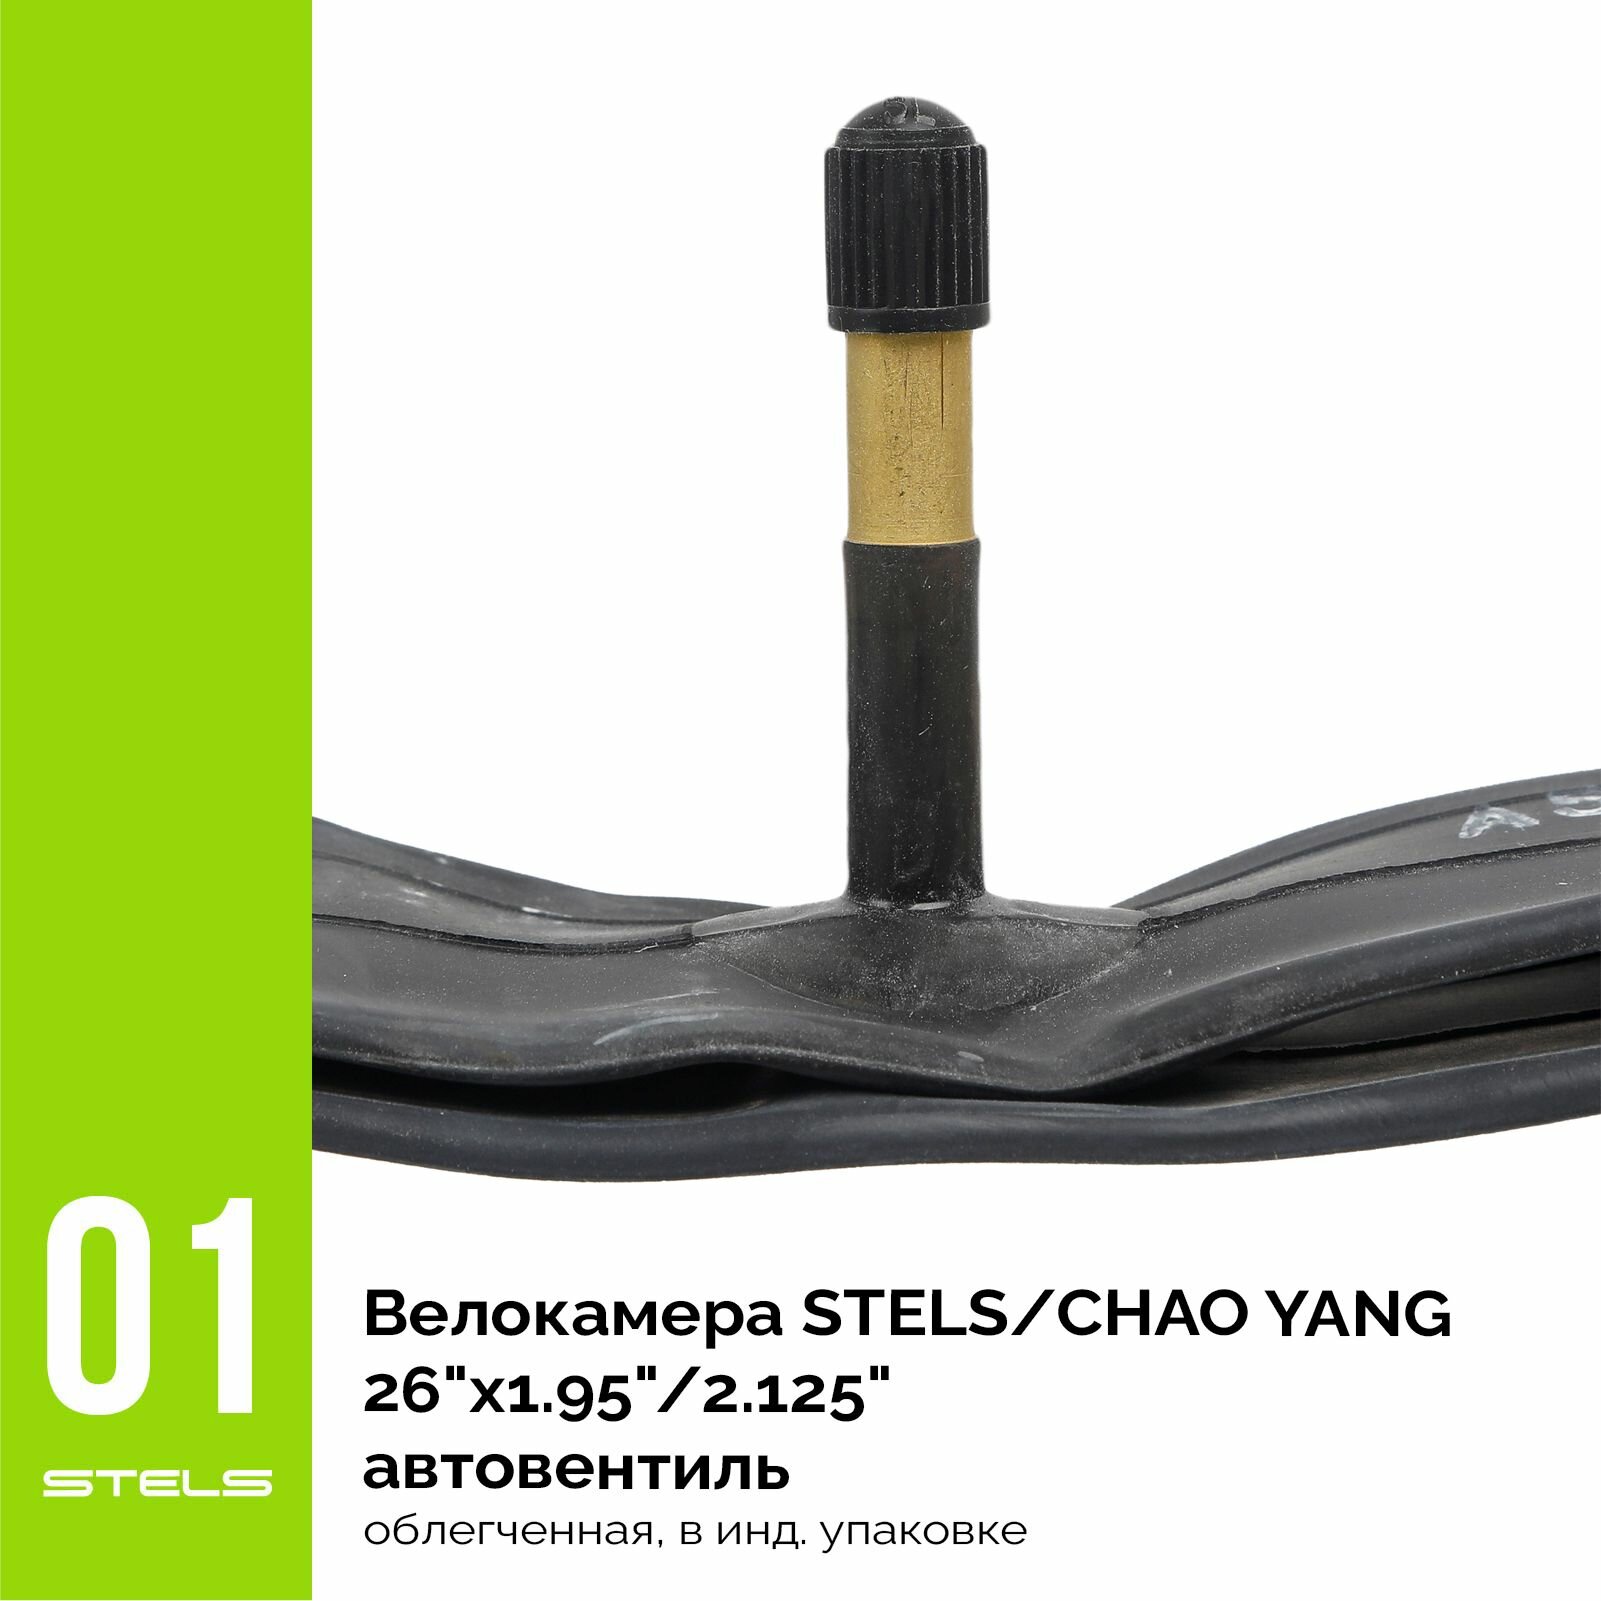 Велокамера CHAO YANG 26"x1.95"/2.125" автониппель, облегченная, в индивидуальной упаковке